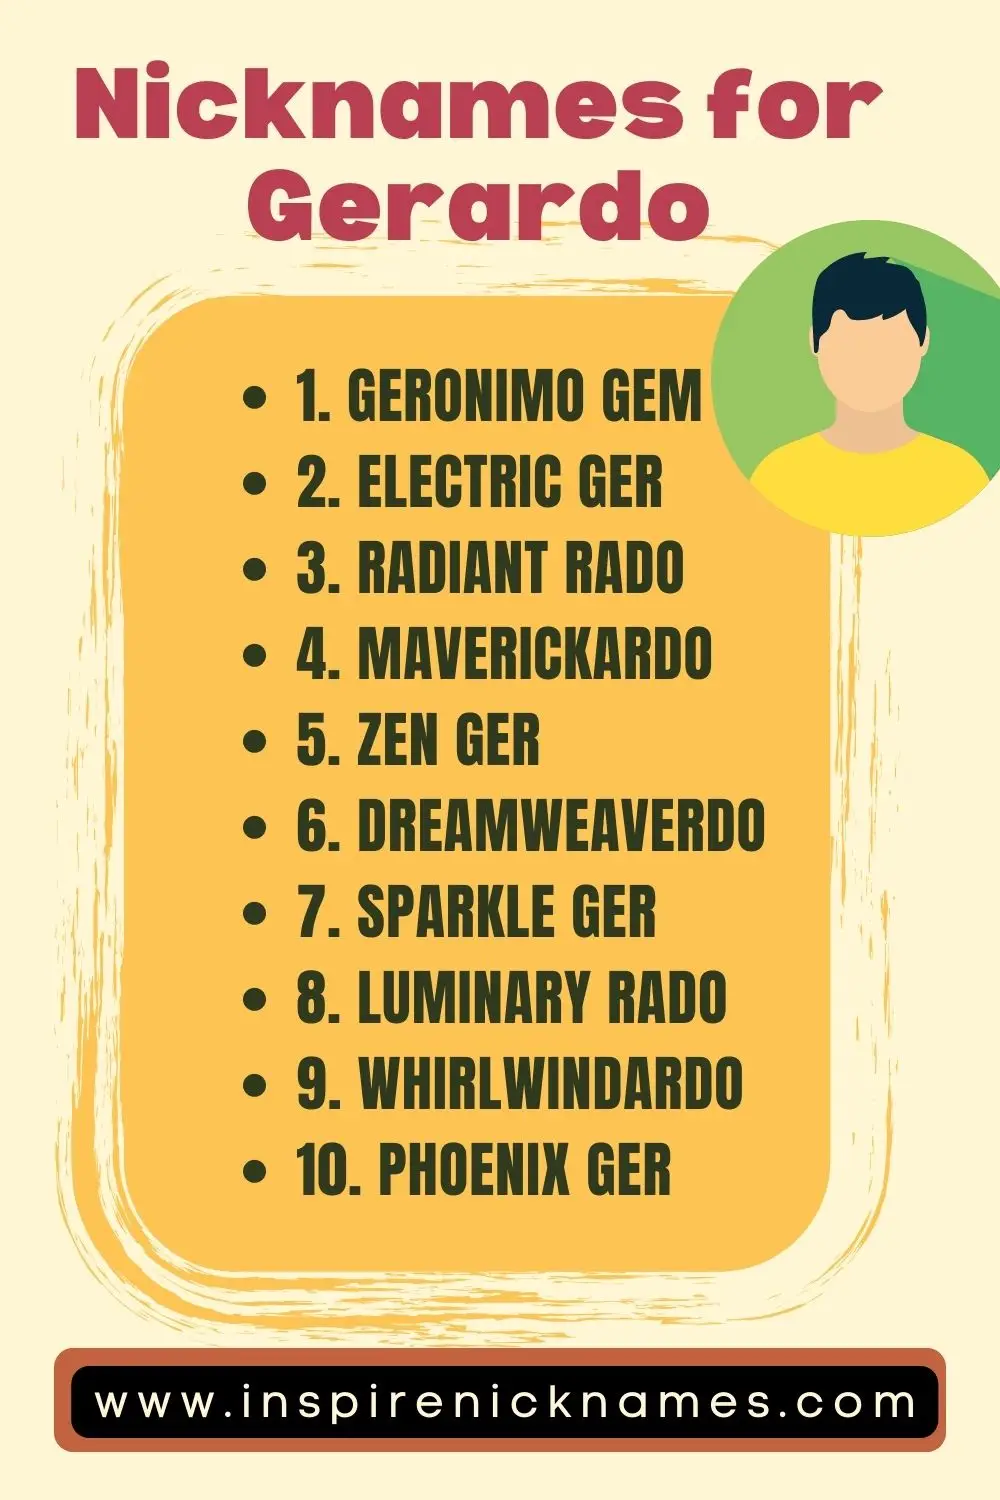 nicknames for gerardo list ideas